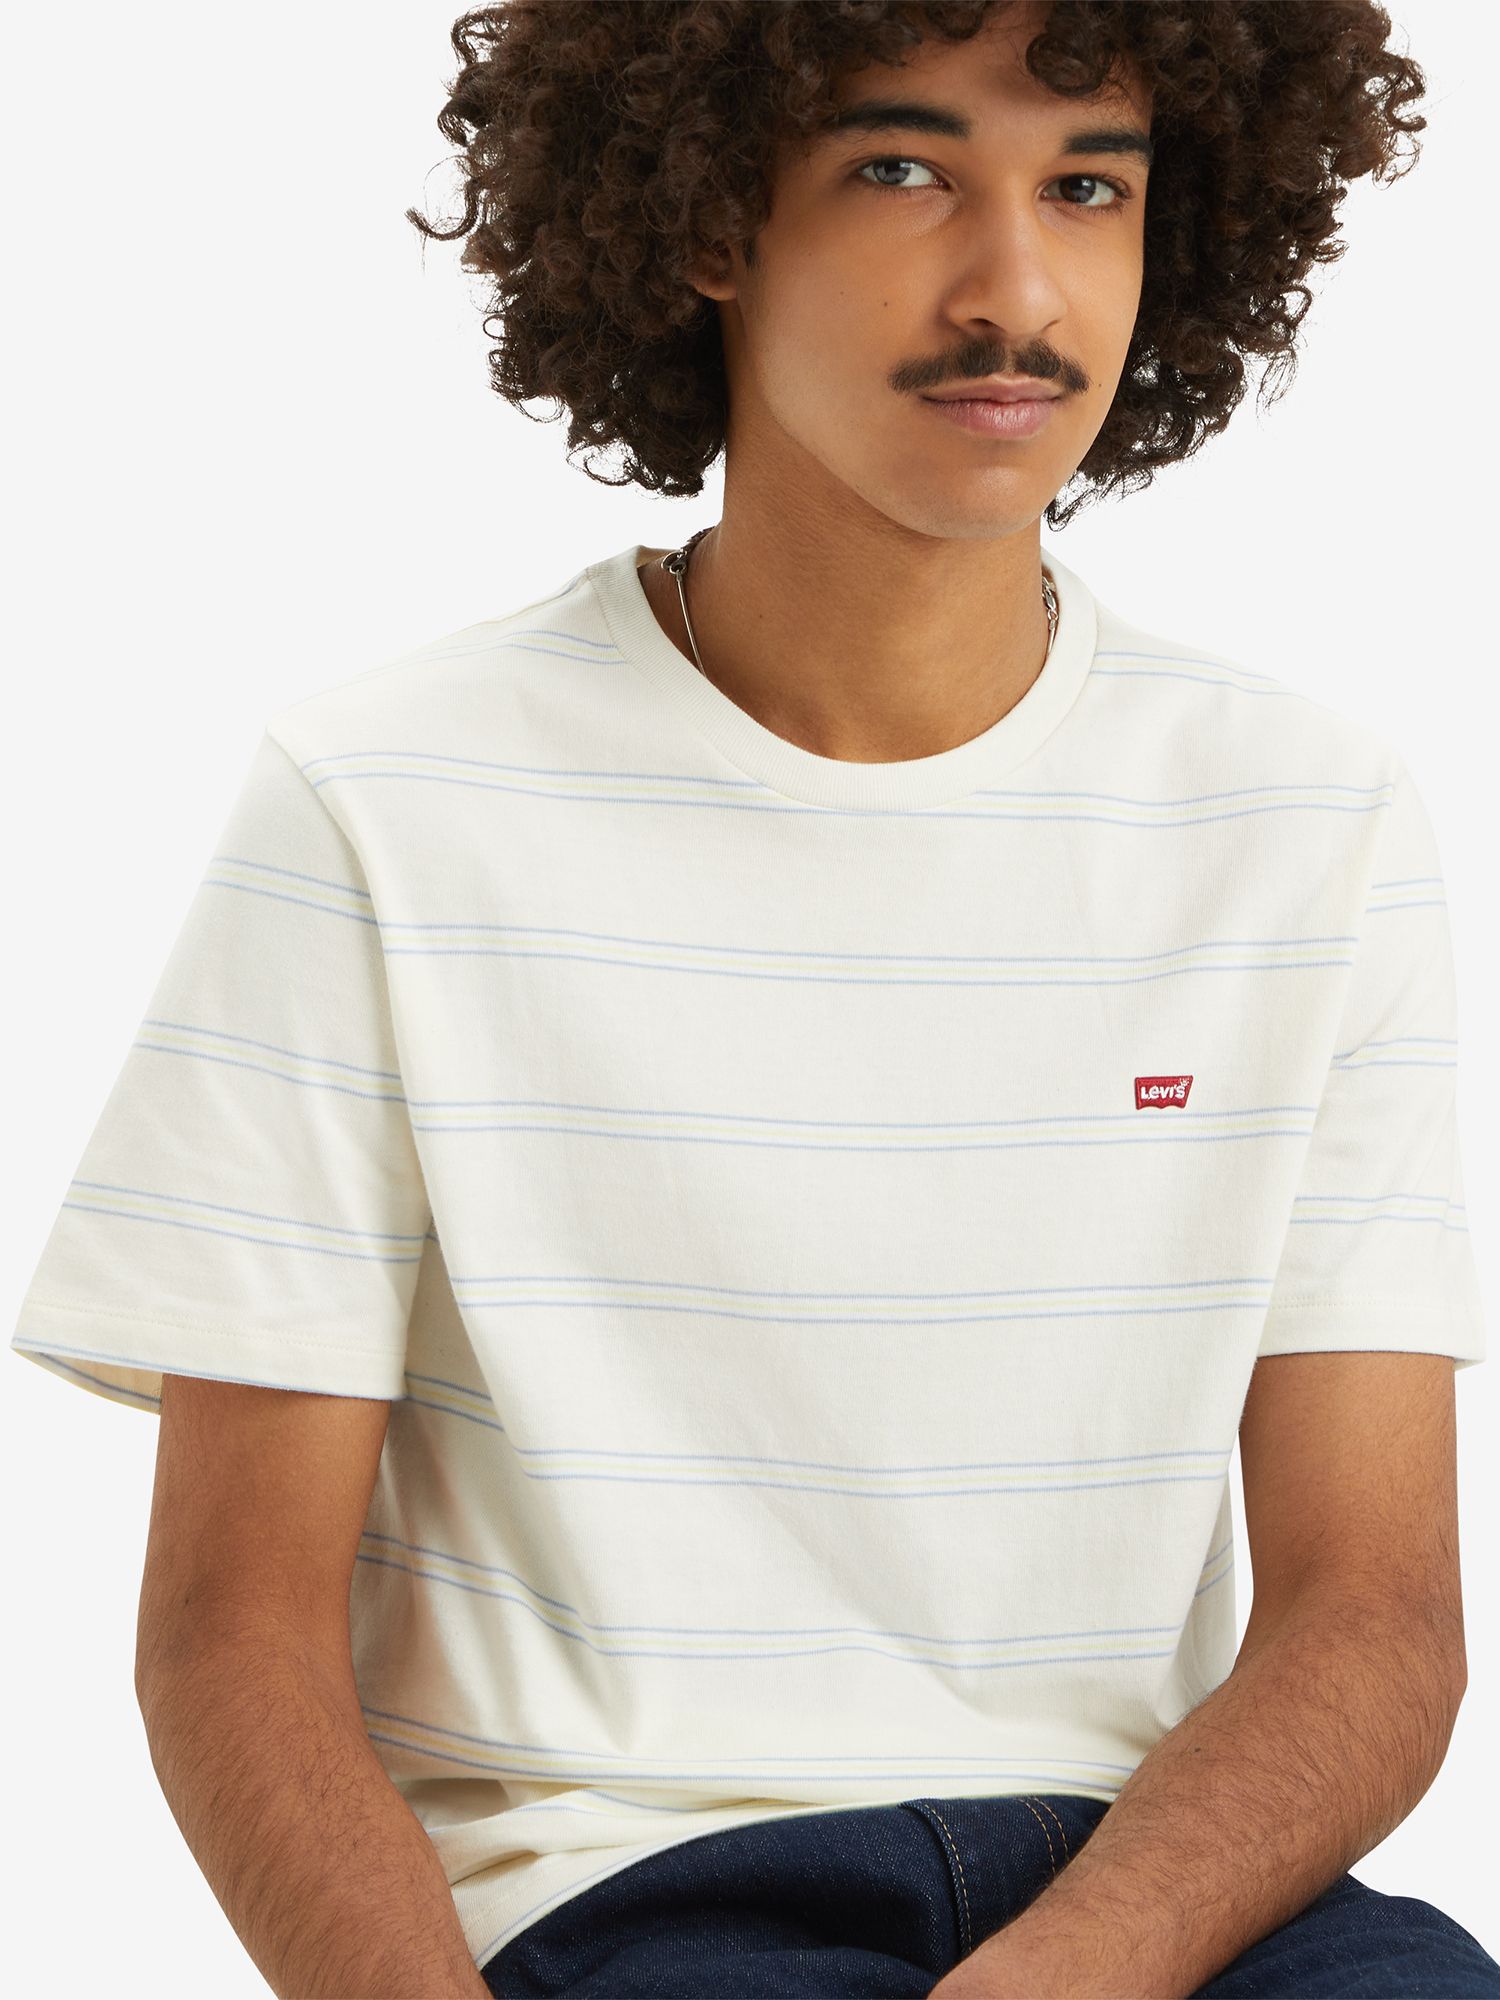 Levi's Original Housemark Seaside Stripe T-Shirt, Egret, S